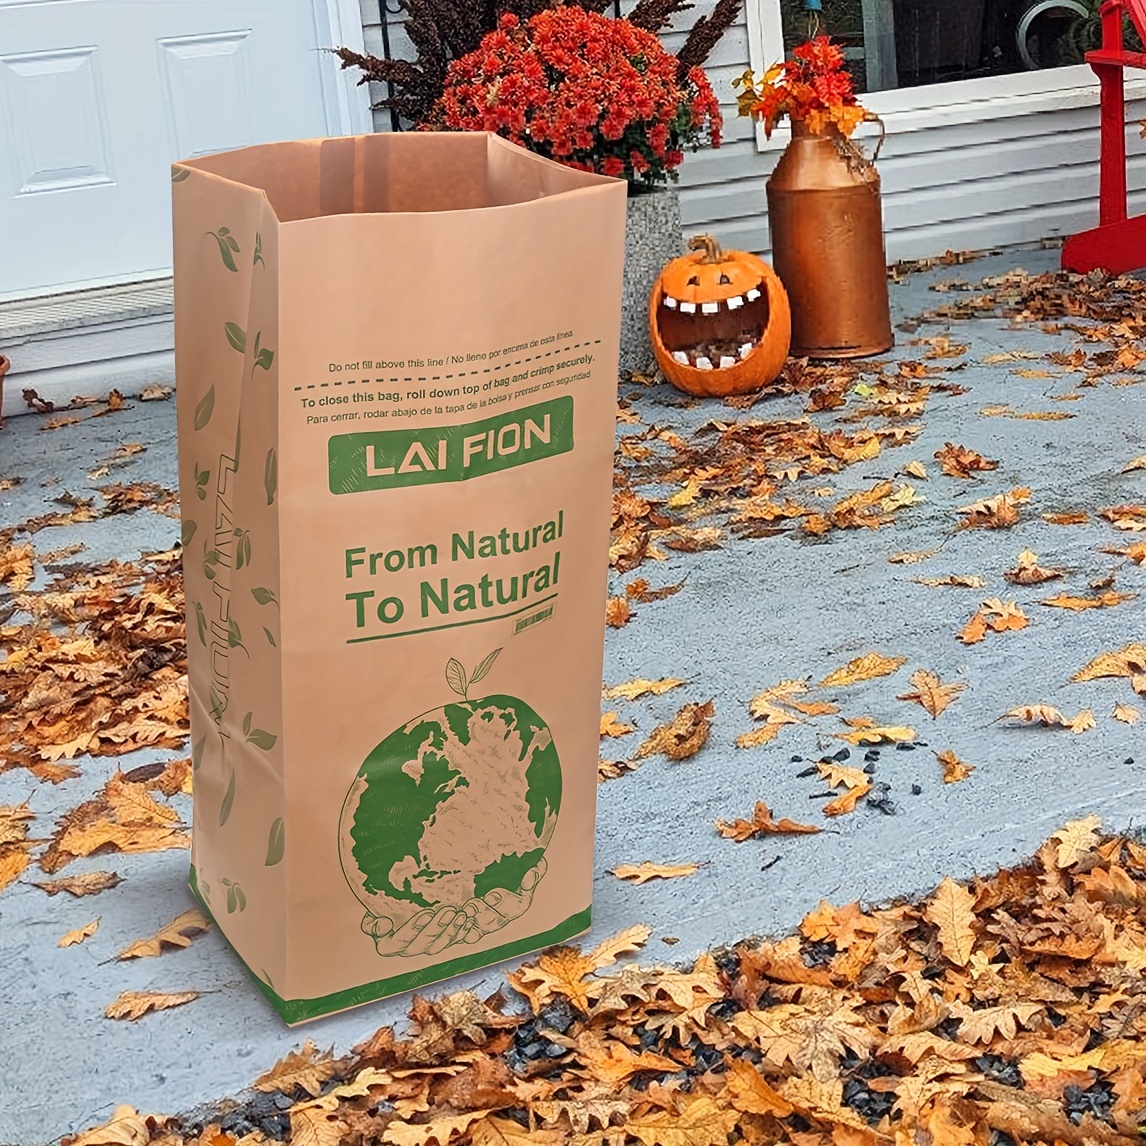 30 Gallon Kraft Lawn And Leaf Bags Heavy Duty - Temu